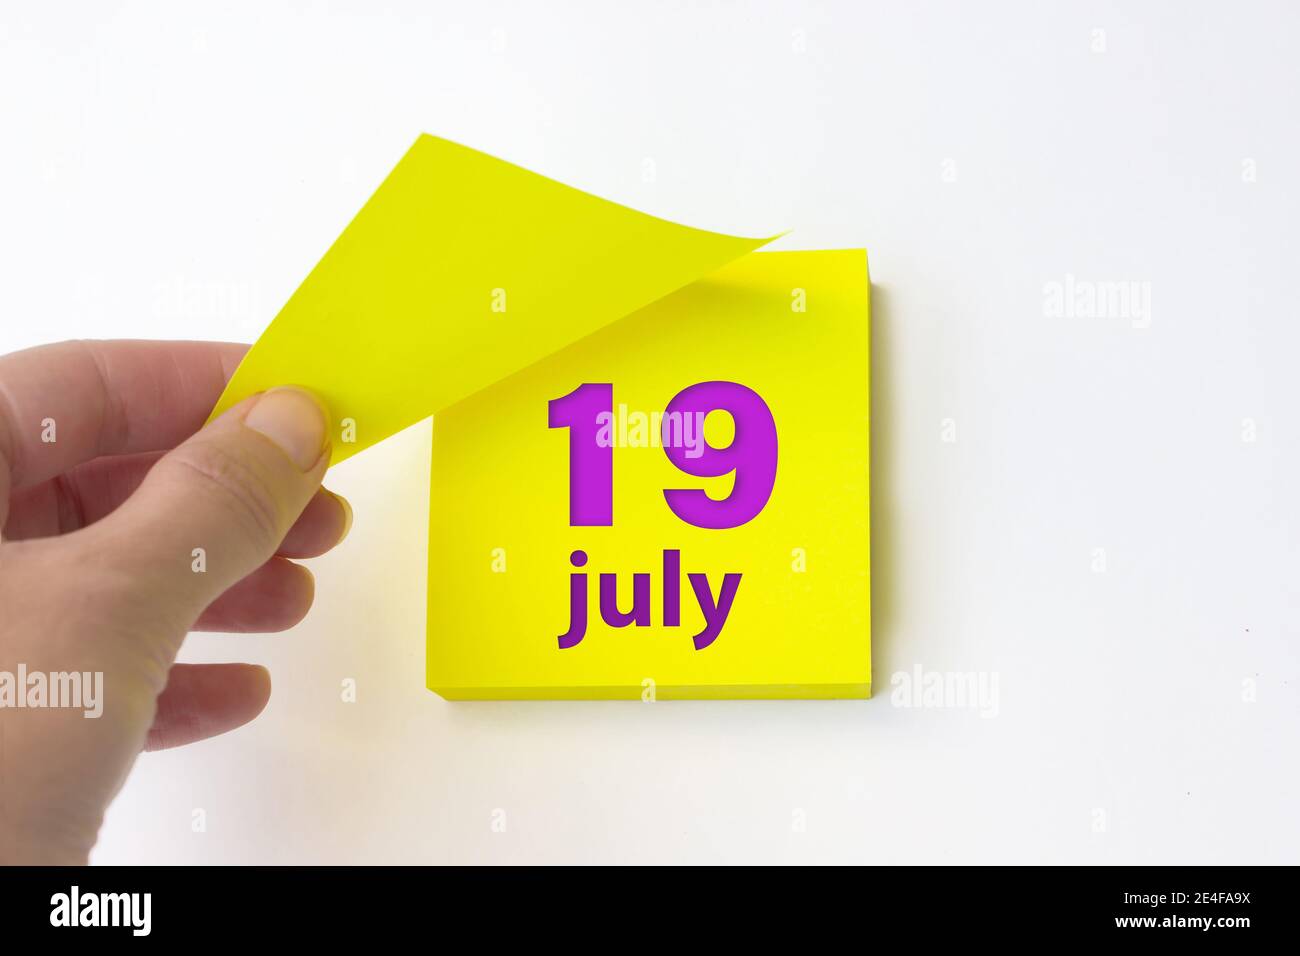 19 luglio. Giorno 19 del mese, data del calendario. La mano si stracca dal foglio giallo del calendario. Mese d'estate, giorno dell'anno concetto Foto Stock